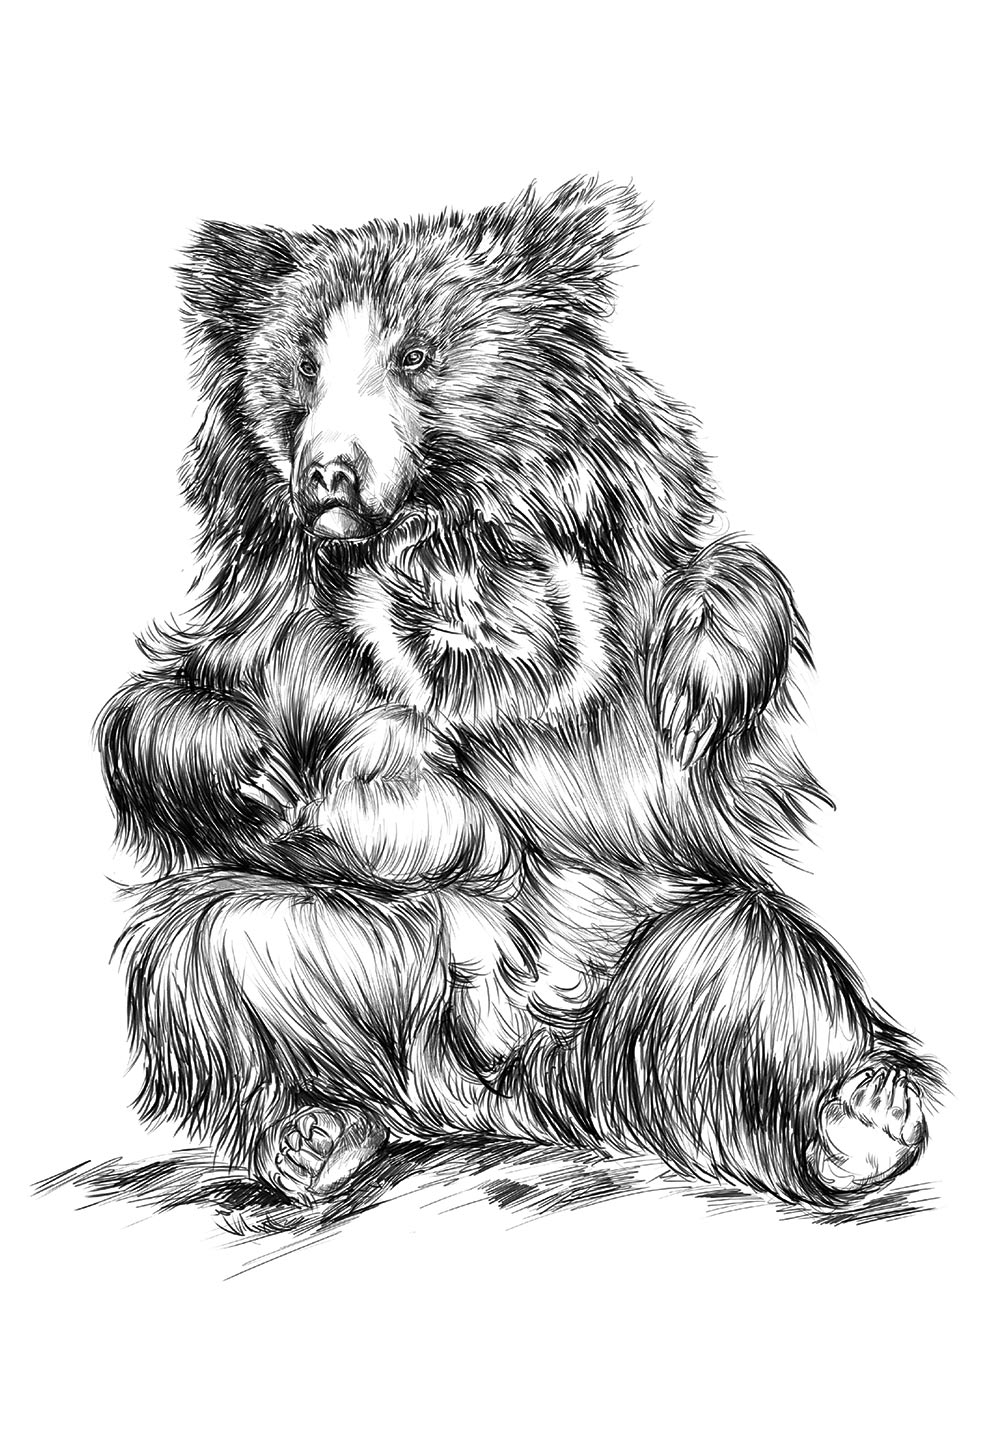 Affiche dessin ours paresseux ourson se nourrit de baies noix insectes poster